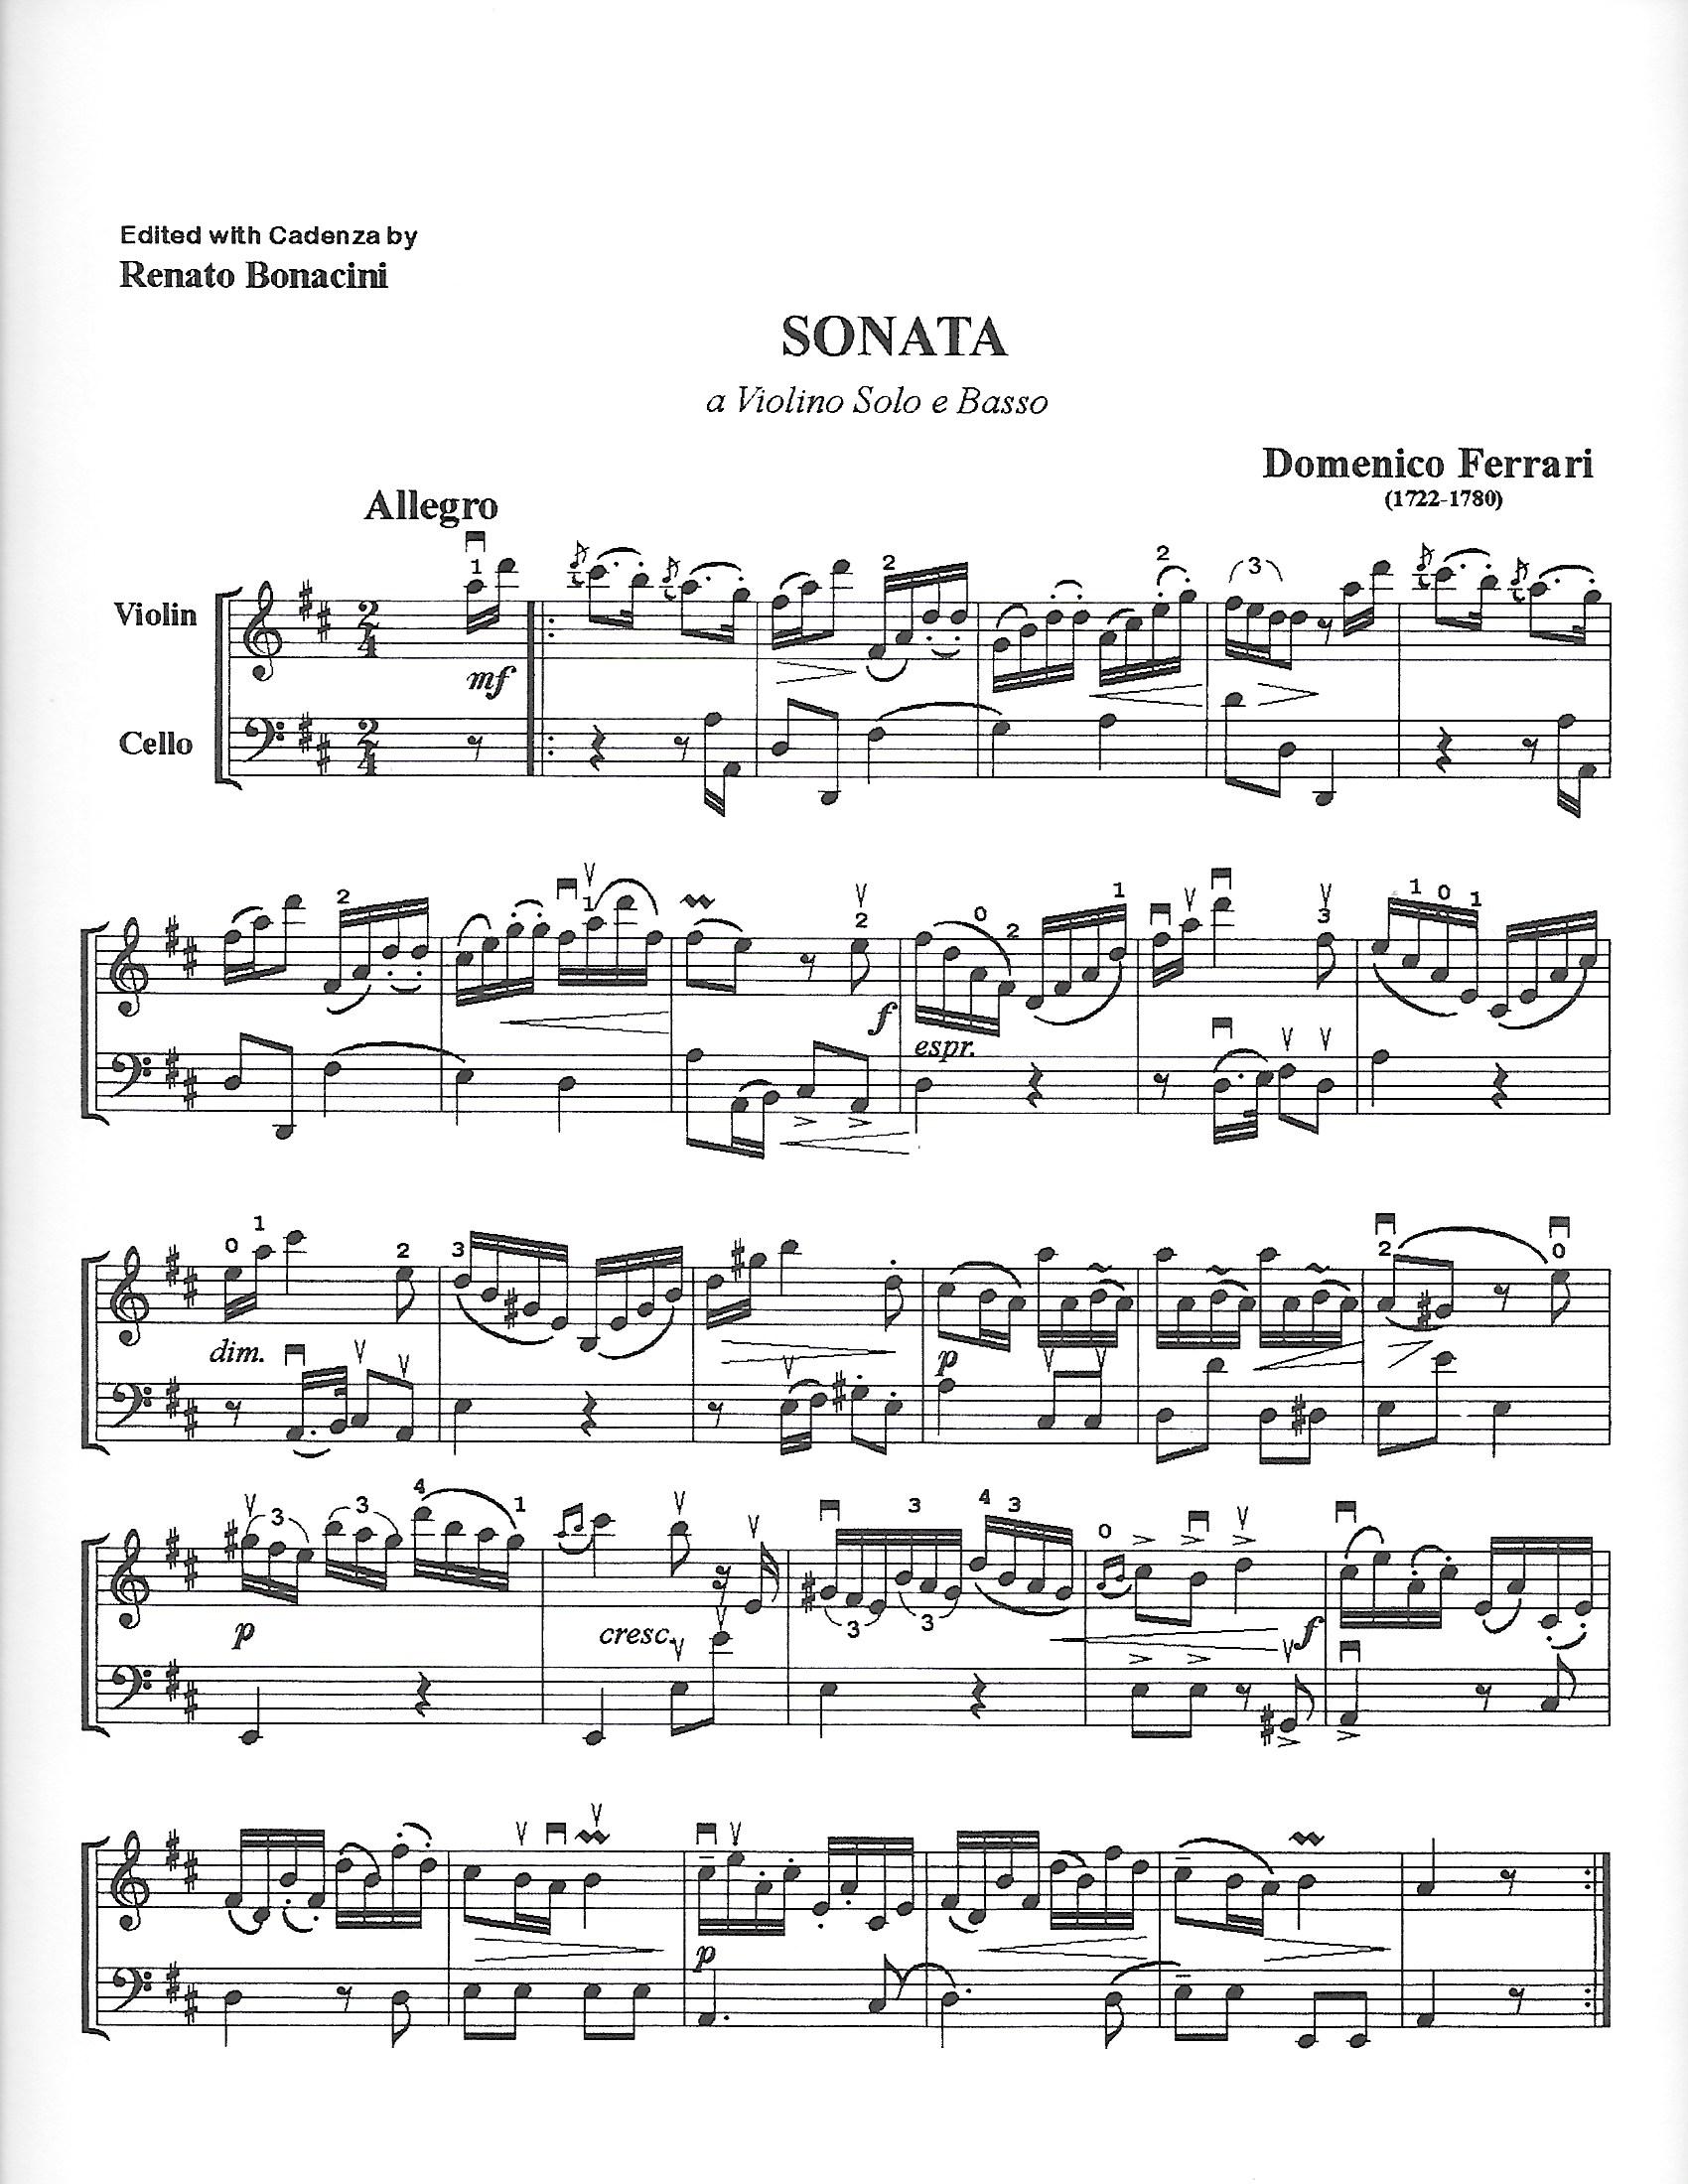 Ferrari, Domenico - Sonata in D Major for Violin and Cello - Music